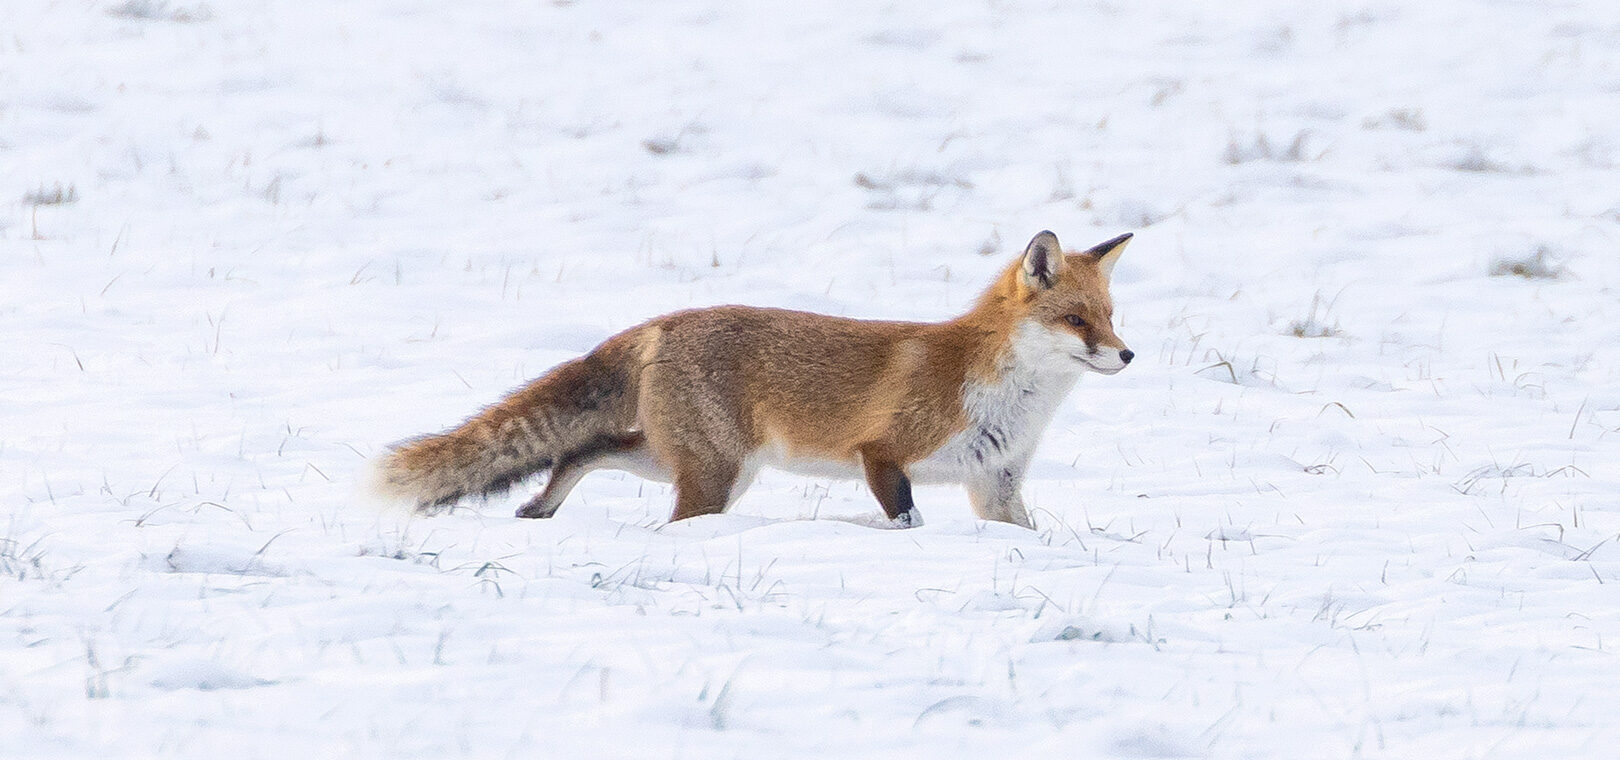 Fuchs auf Nahrungssuche im Schnee, Hörden am Harz